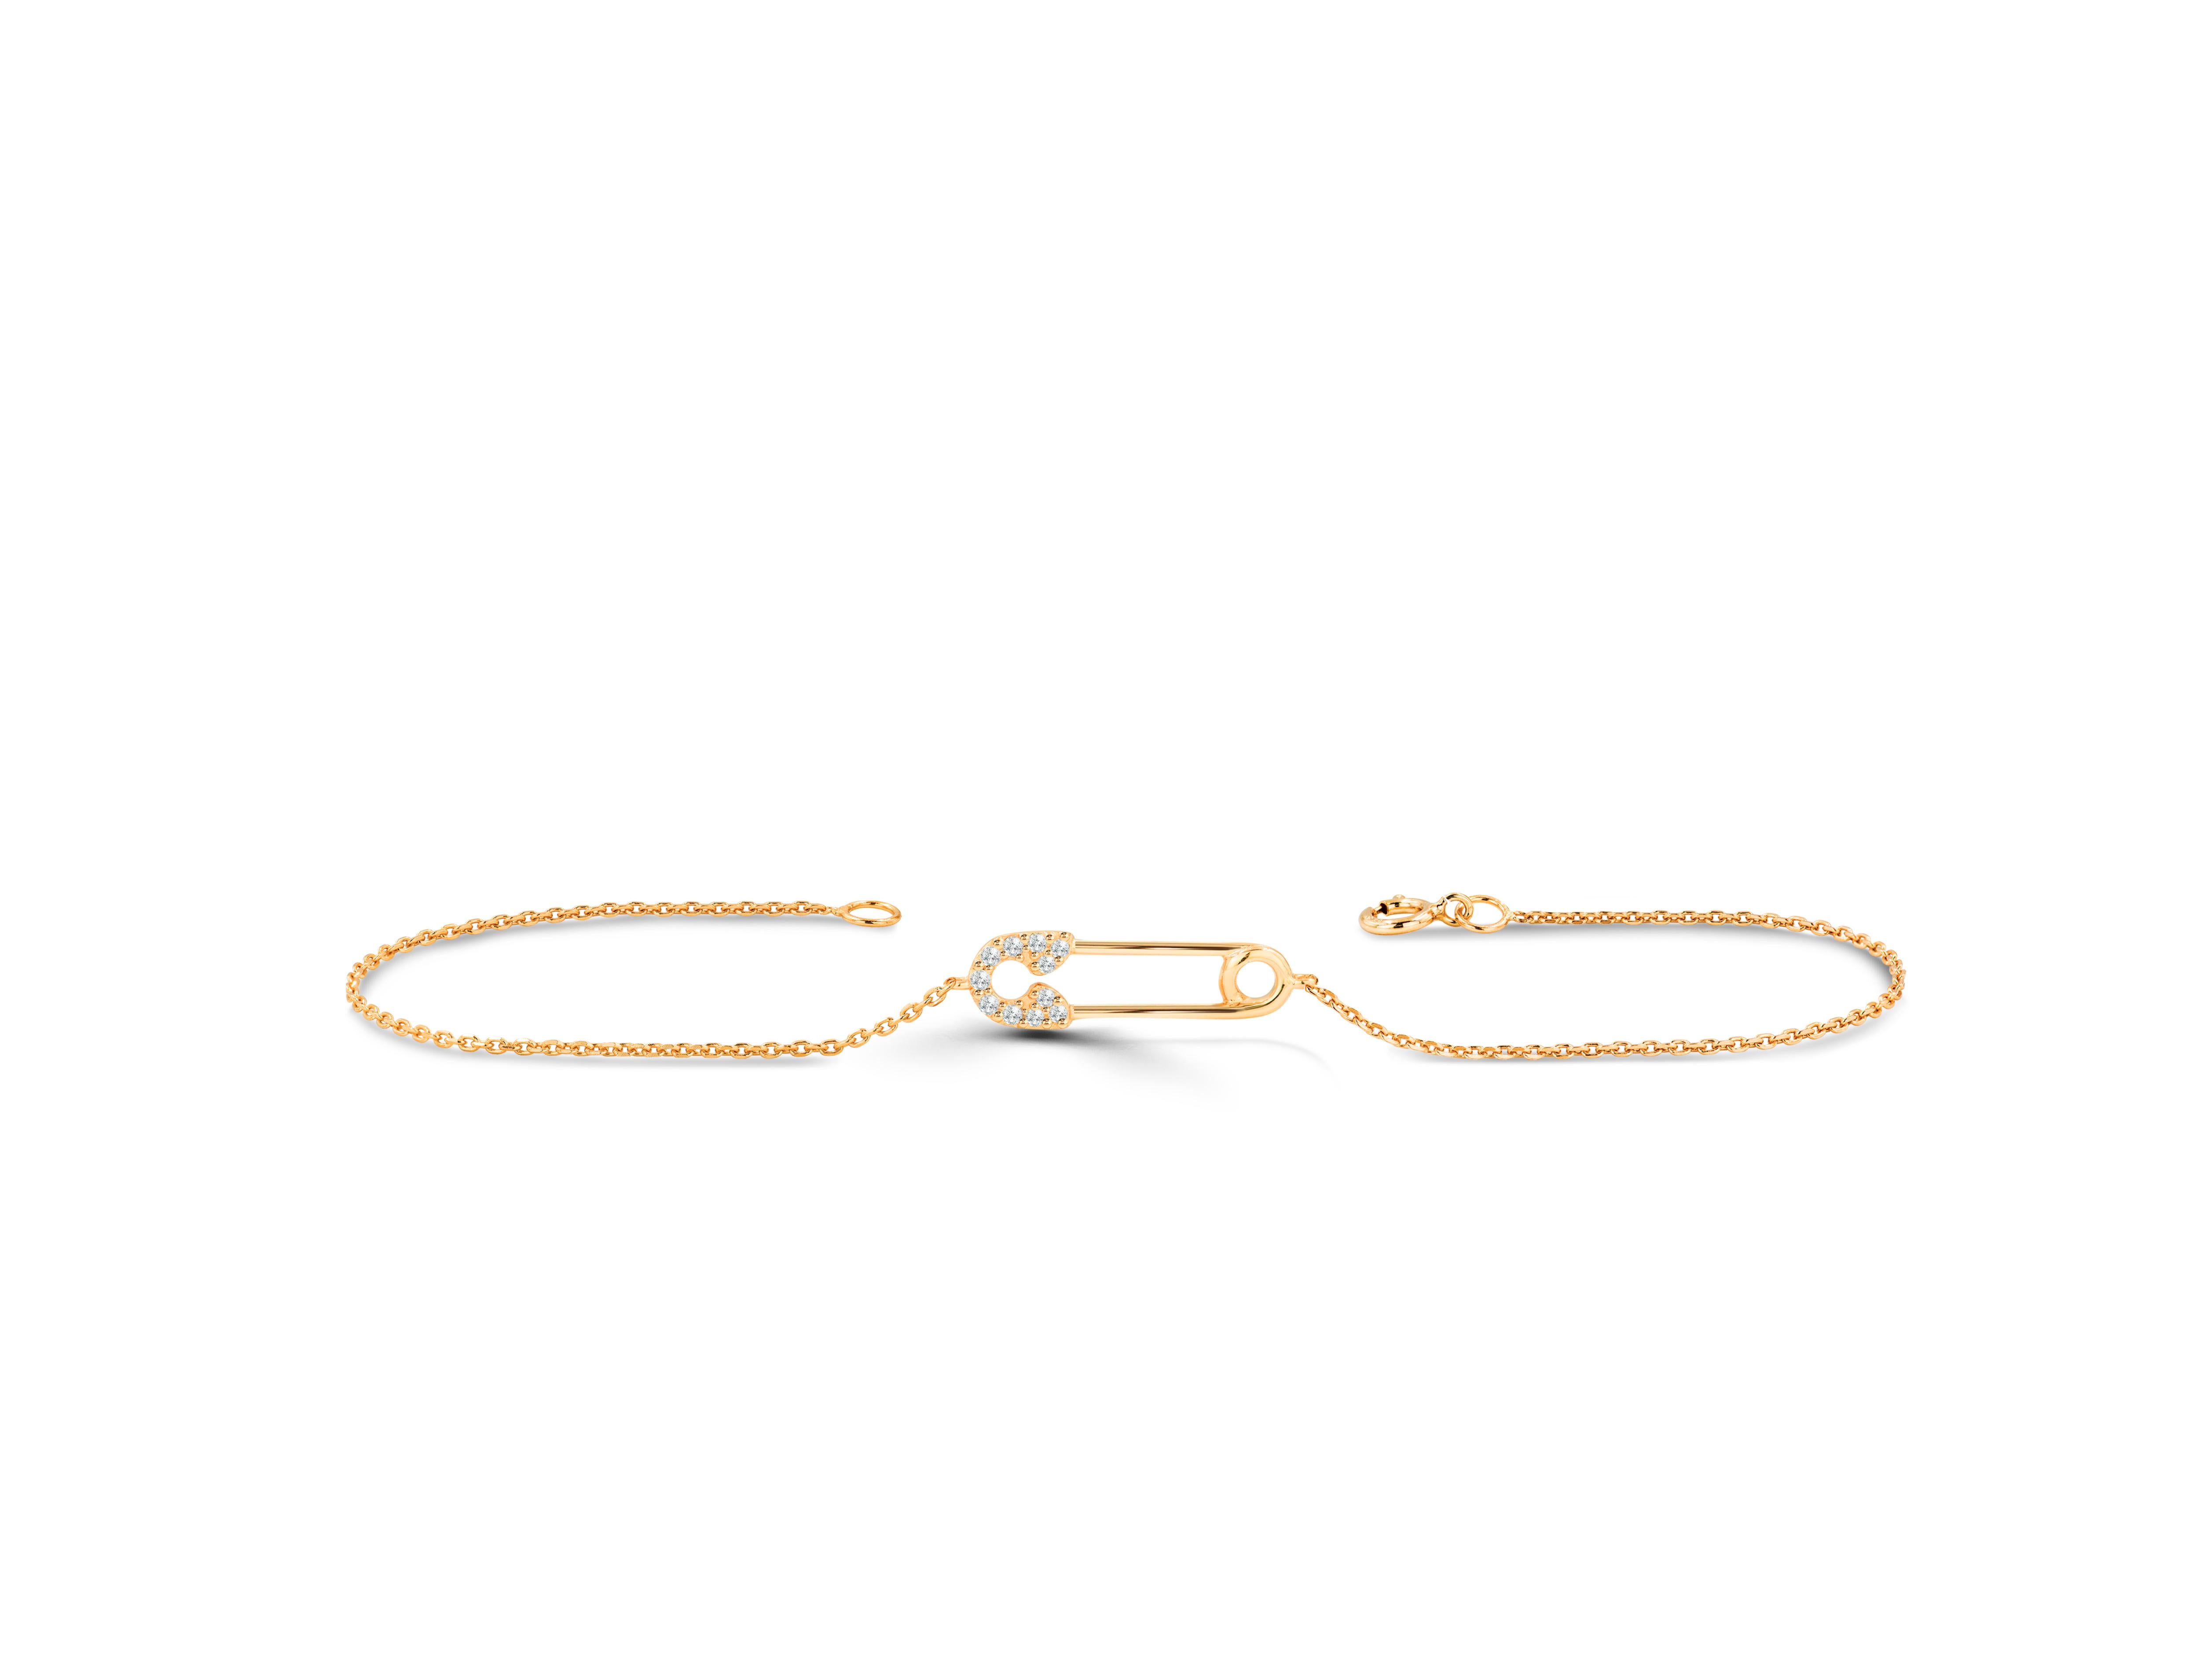 Dieses schöne und elegante Armband mit Sicherheitsnadel ist aus reinem Gold gefertigt und besteht aus echten und natürlichen Diamanten. Dieses minimalistische Armband verleiht Ihrer Hand einen raffinierten und dennoch stilvollen Look. Das Armband